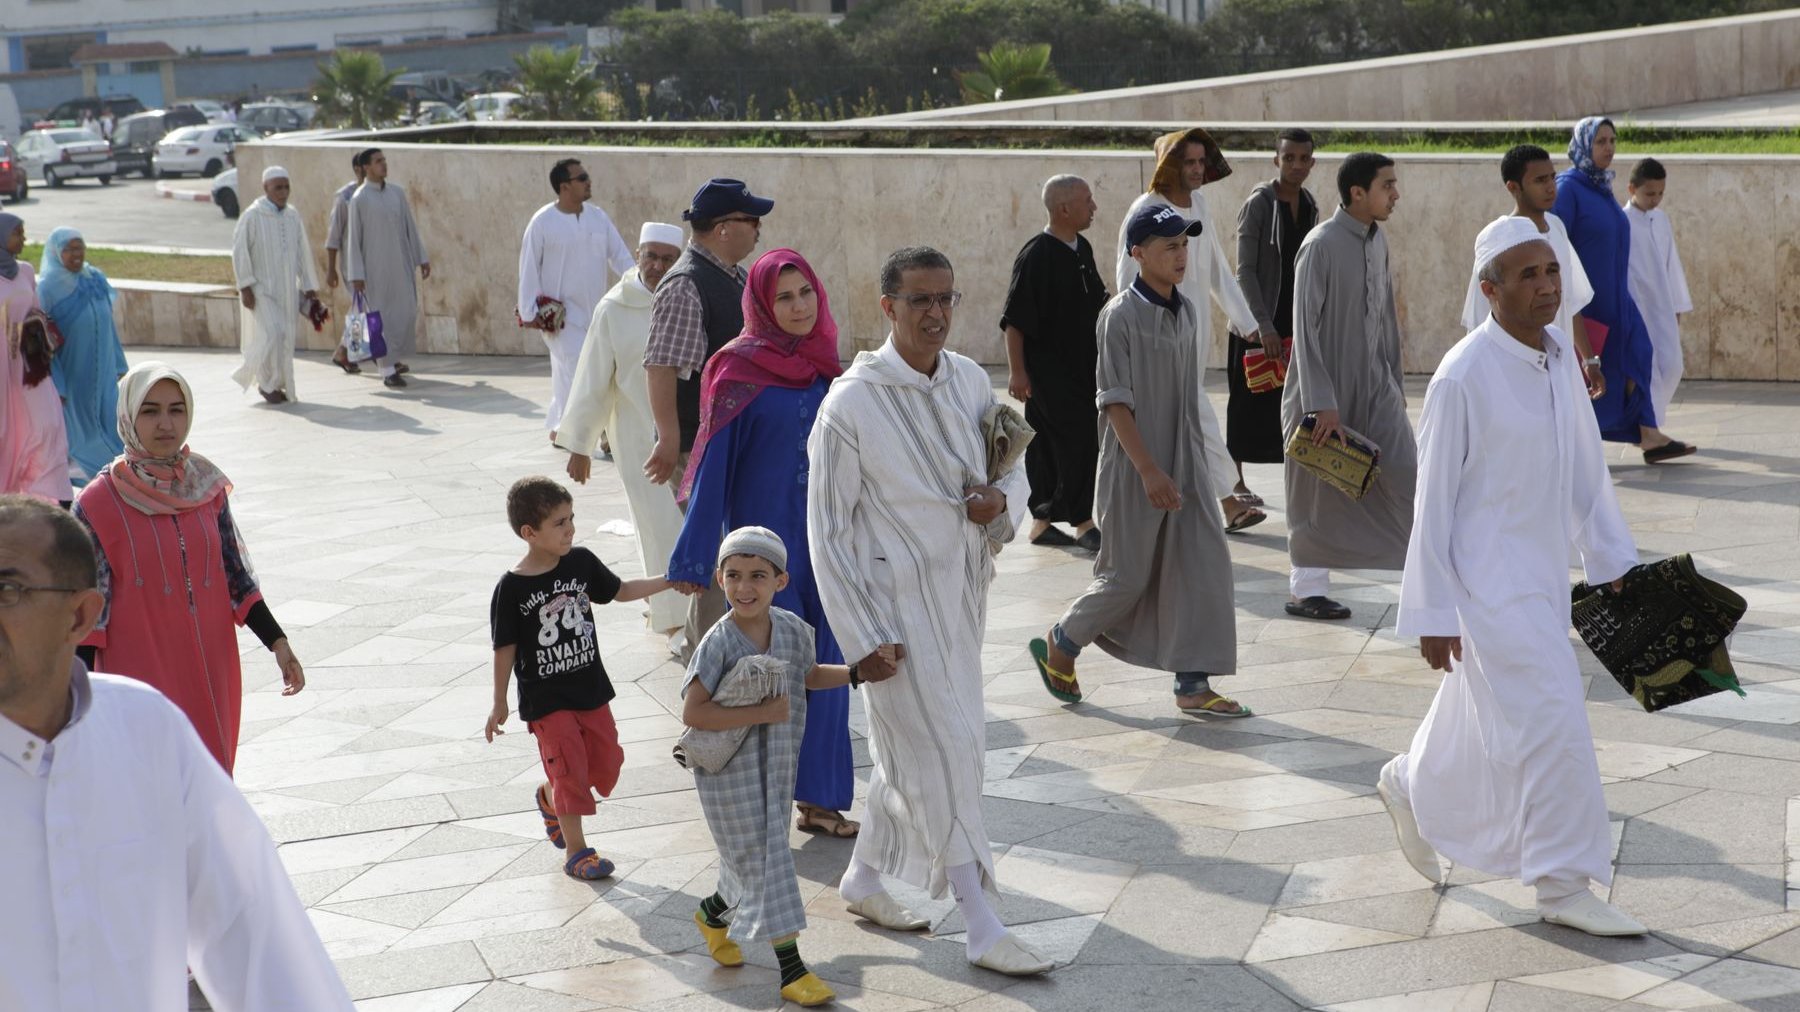 En ce matin de l'Aïd el Fitr, les Marocains se sont rendus, en famille, à la mosquée, pour célébrer ce jour particulier.
